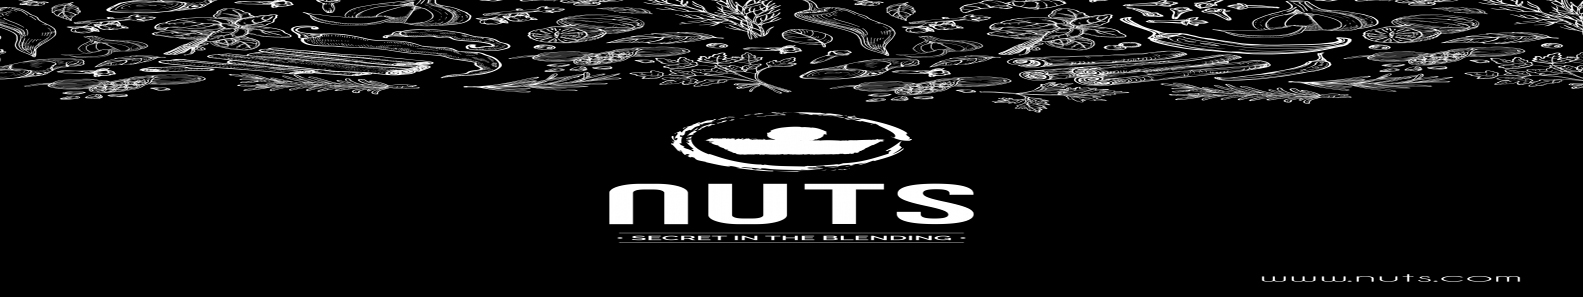 NUTS SPICE PVT LTD